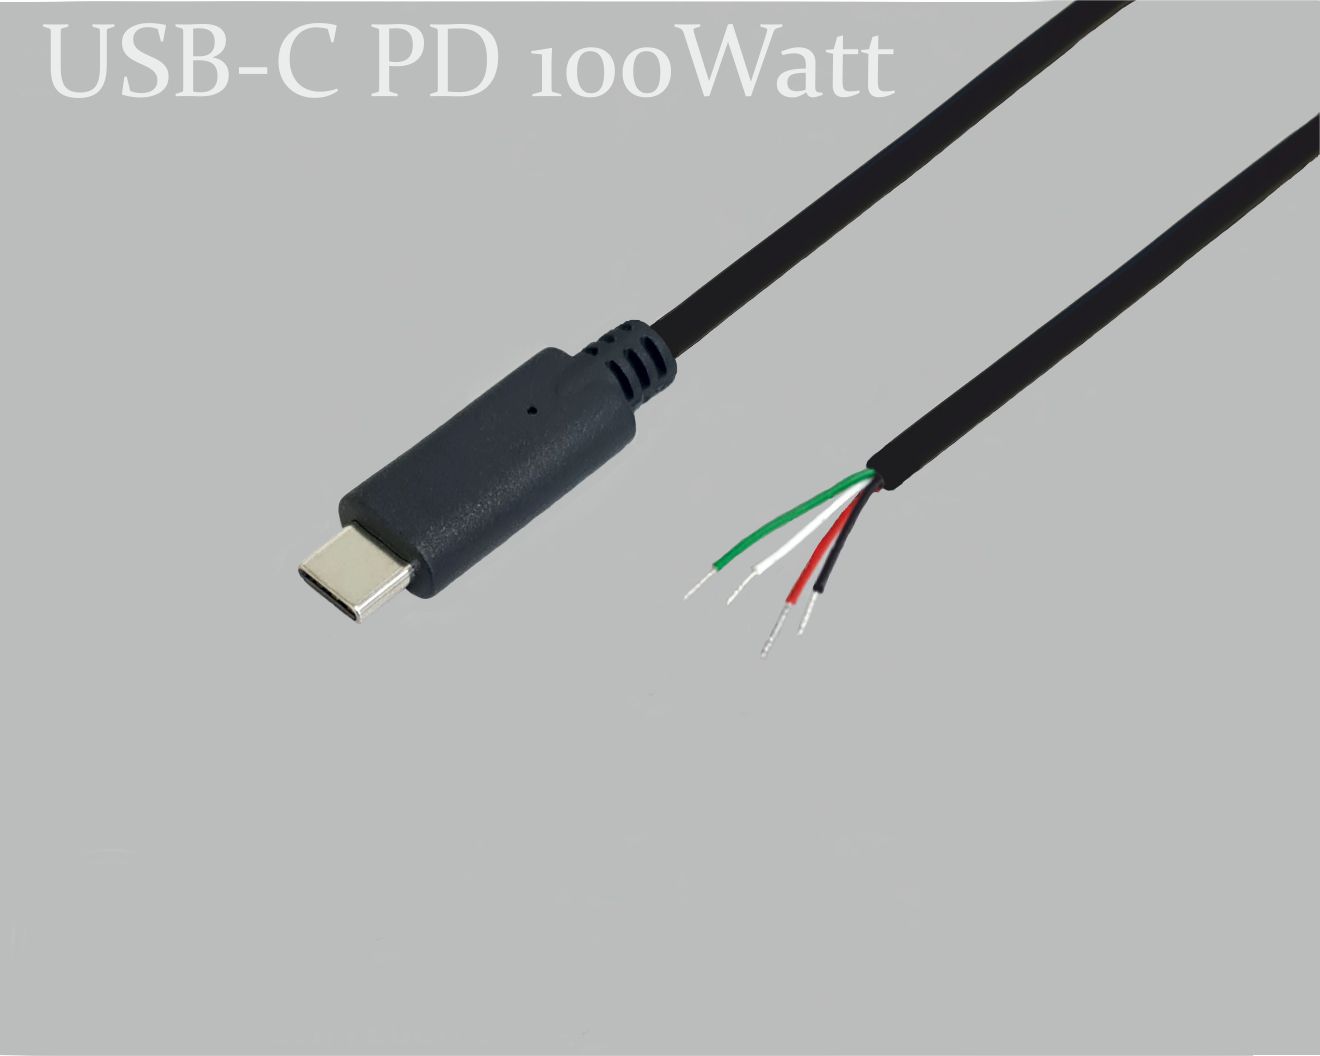 USB-C Anschlusskabel, PD Power Delivery 100W(5A/20V) mit E-Mark Chip zum schnell laden, USB-C-Stecker gerade auf offenes Ende, 0,5m, schwarz, abgemantelt und verzinnt